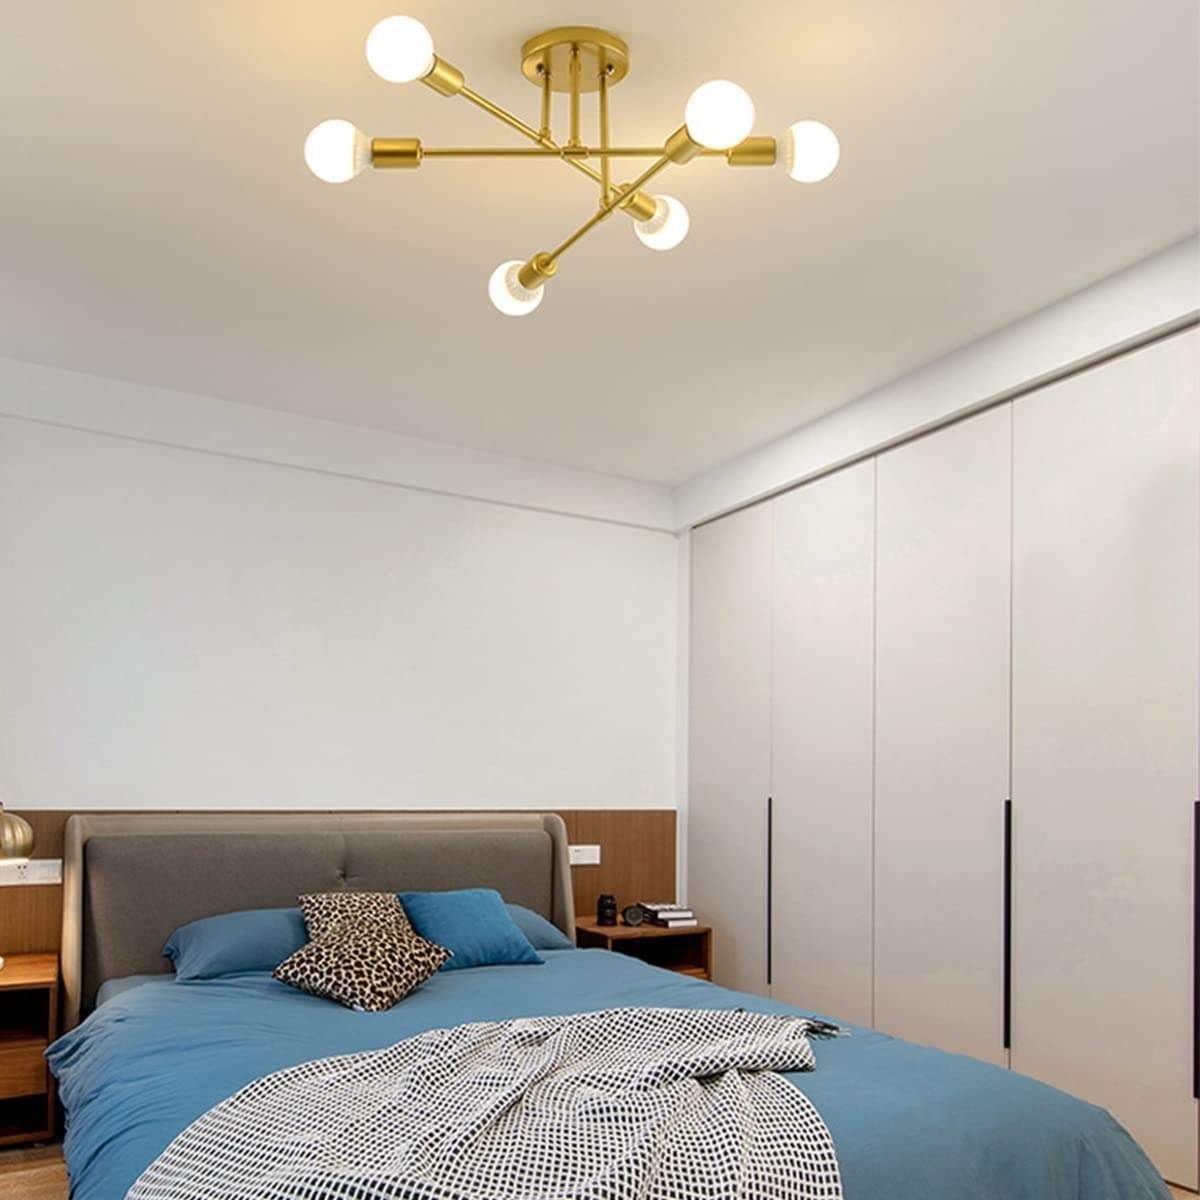 Lámpara de techo con diseño de araña, color dorado seis luces